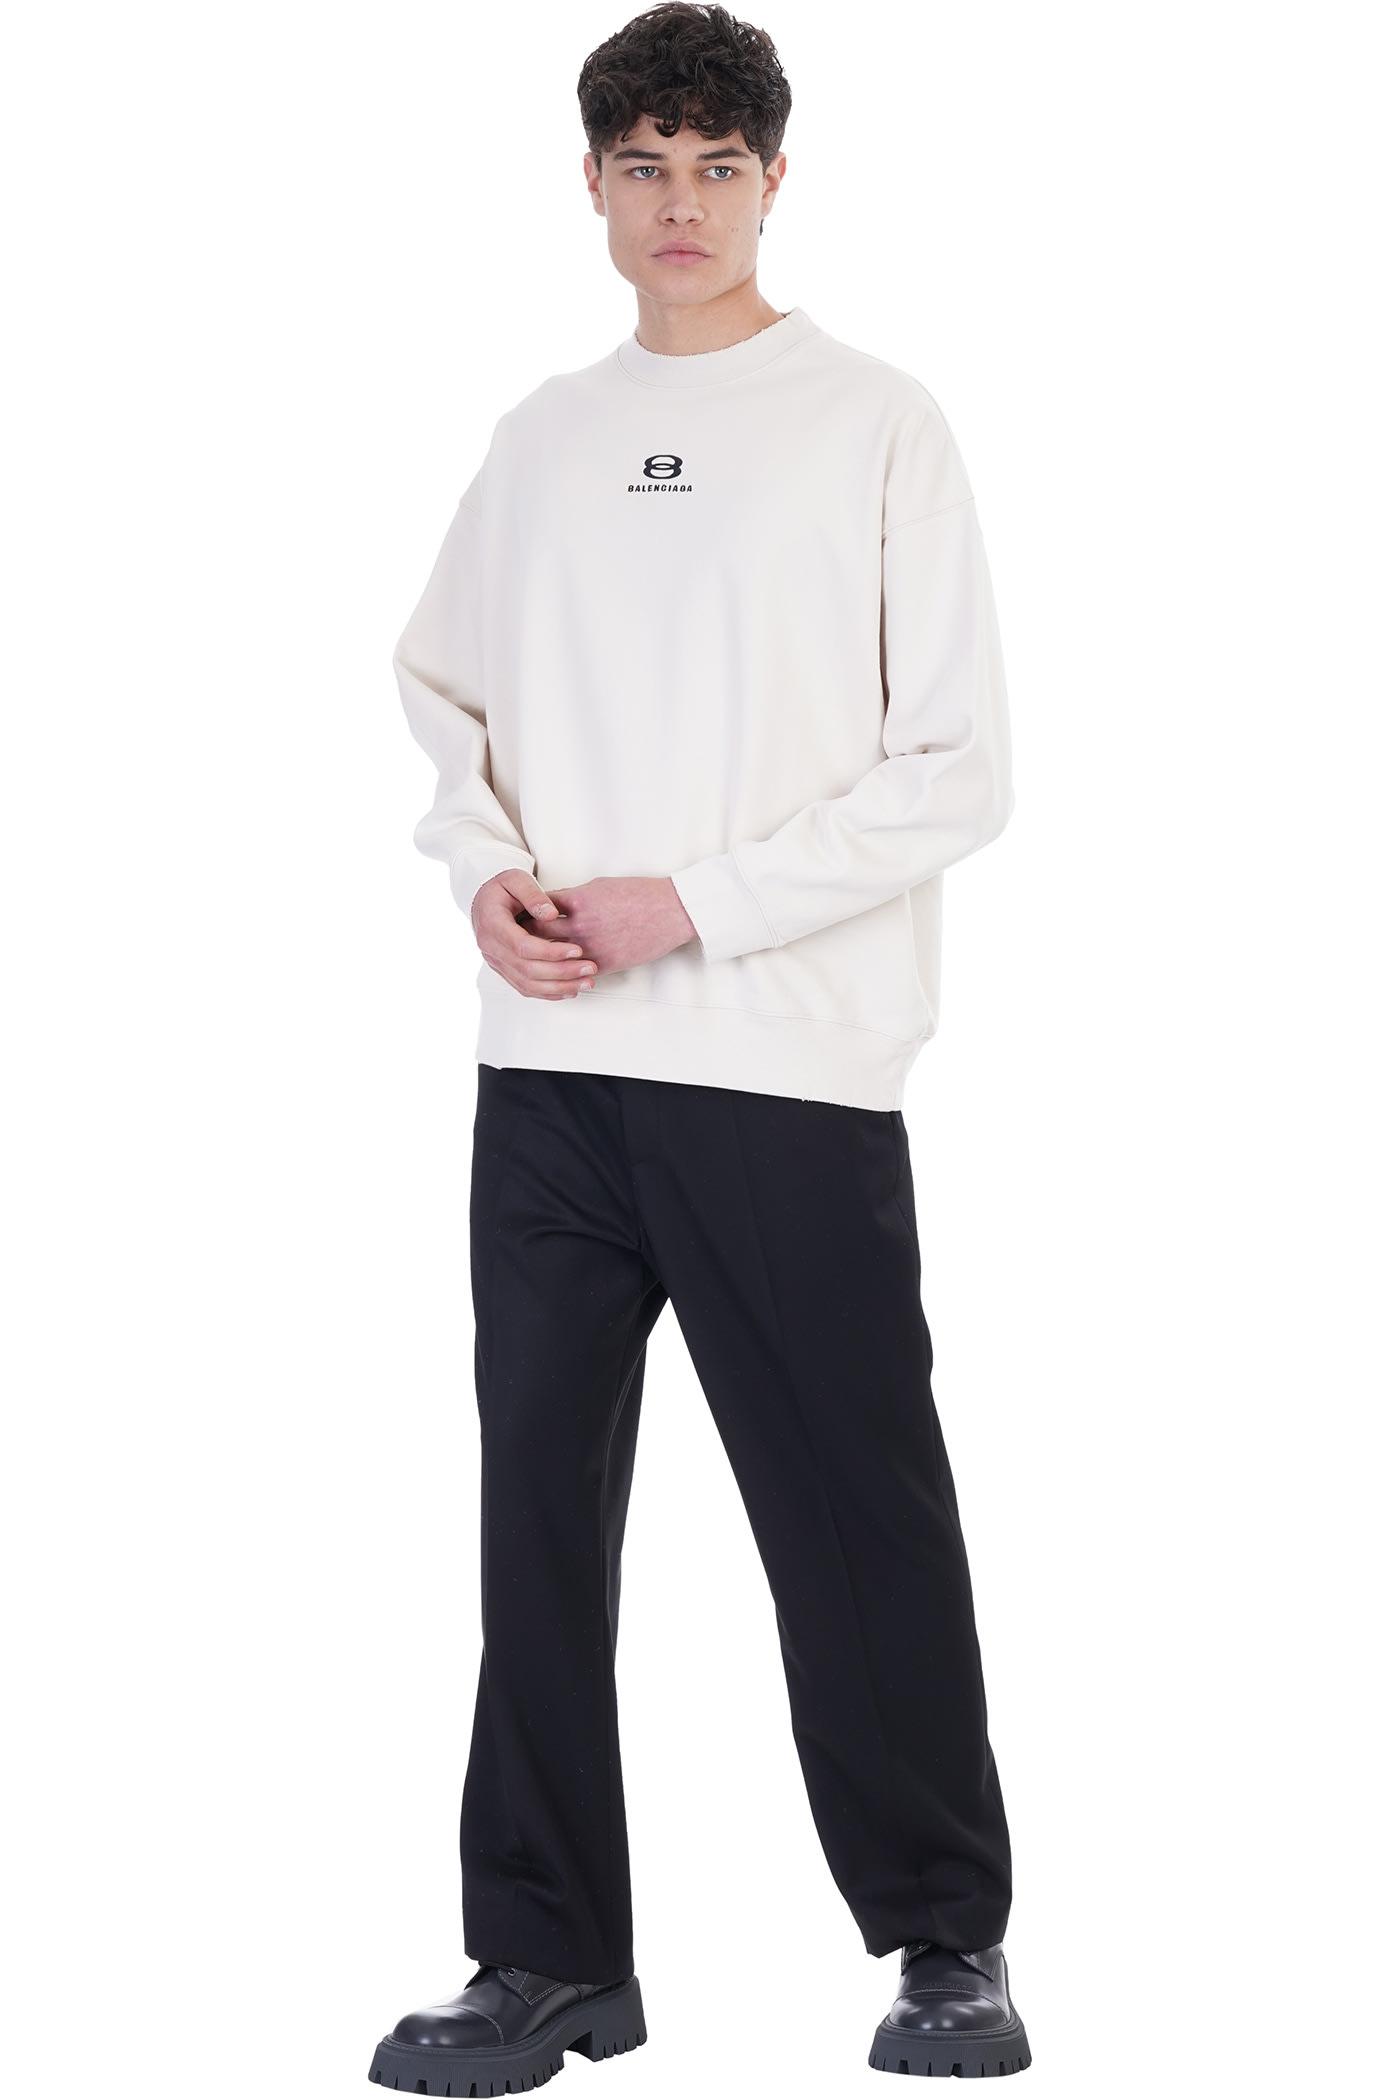 Balenciaga Sweatshirt In Cotton in White for Men | Lyst